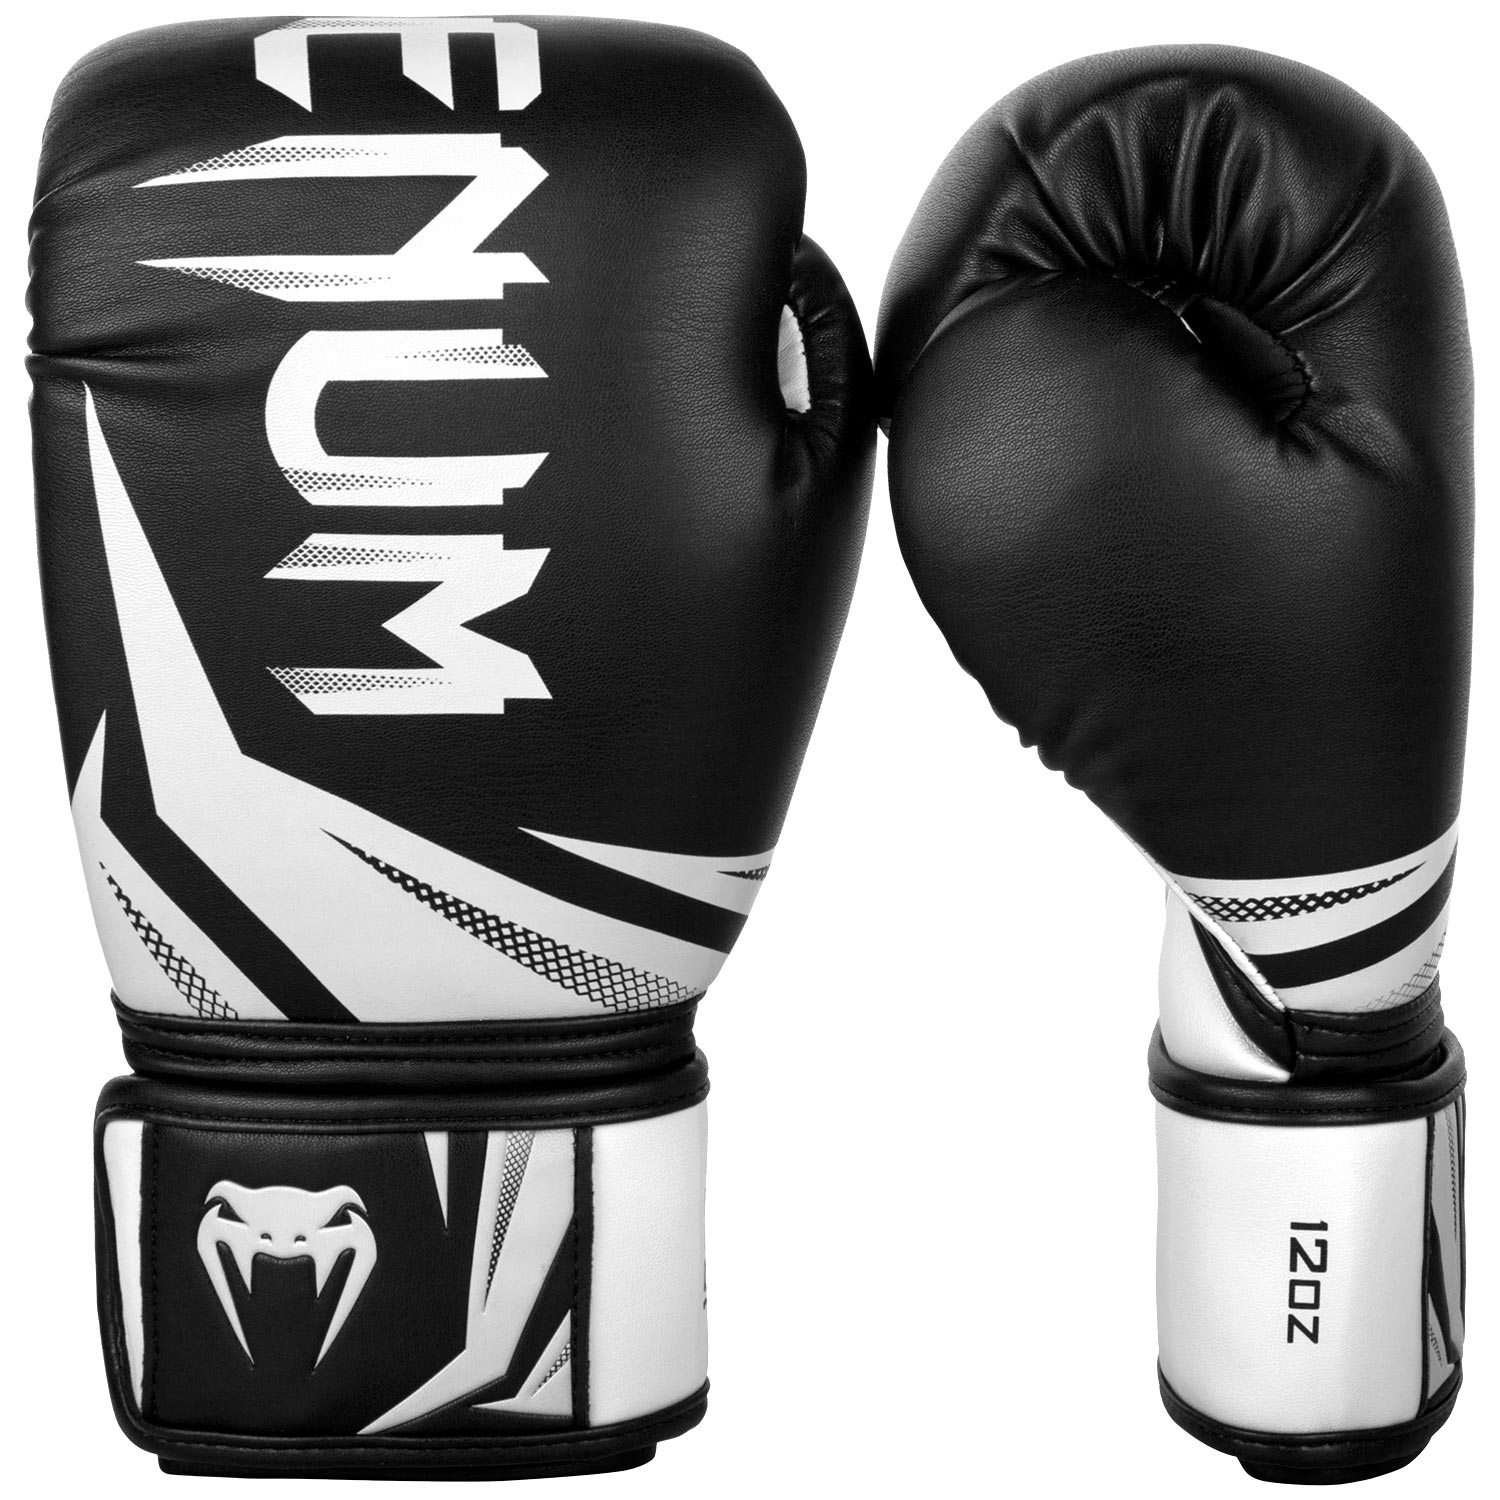 Boxerské rukavice Challenger 3.0 černé/bílé VENUM vel. 16 oz